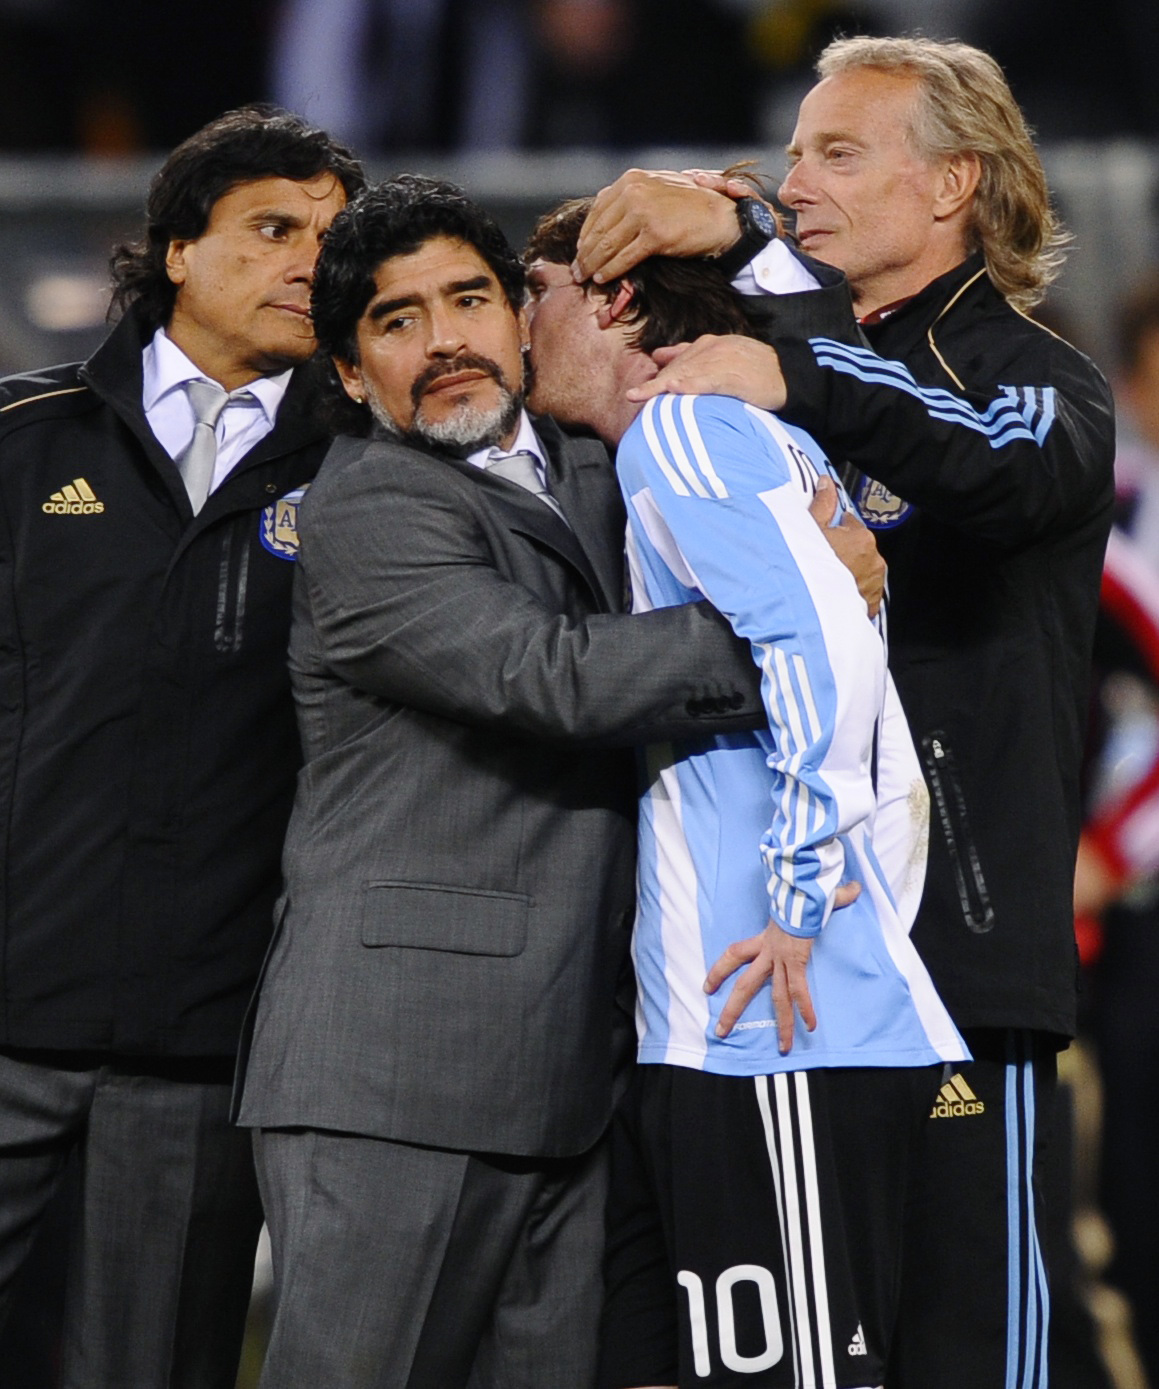 Diego Maradona var tränare för Argentina tidigare.